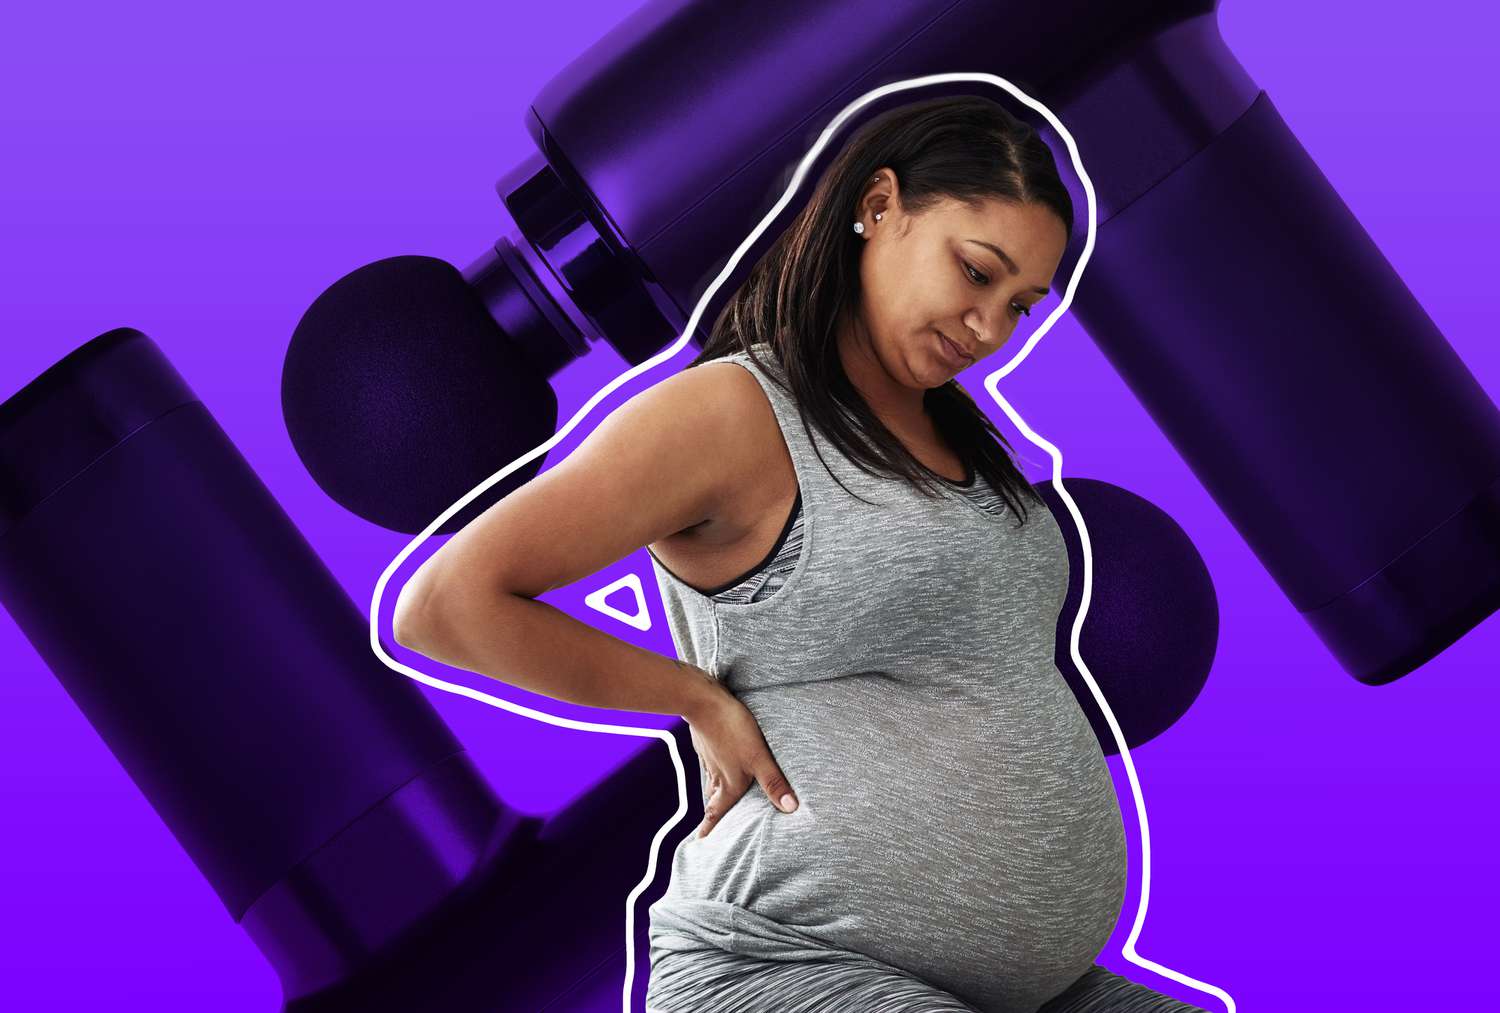 massage gun during pregnancy